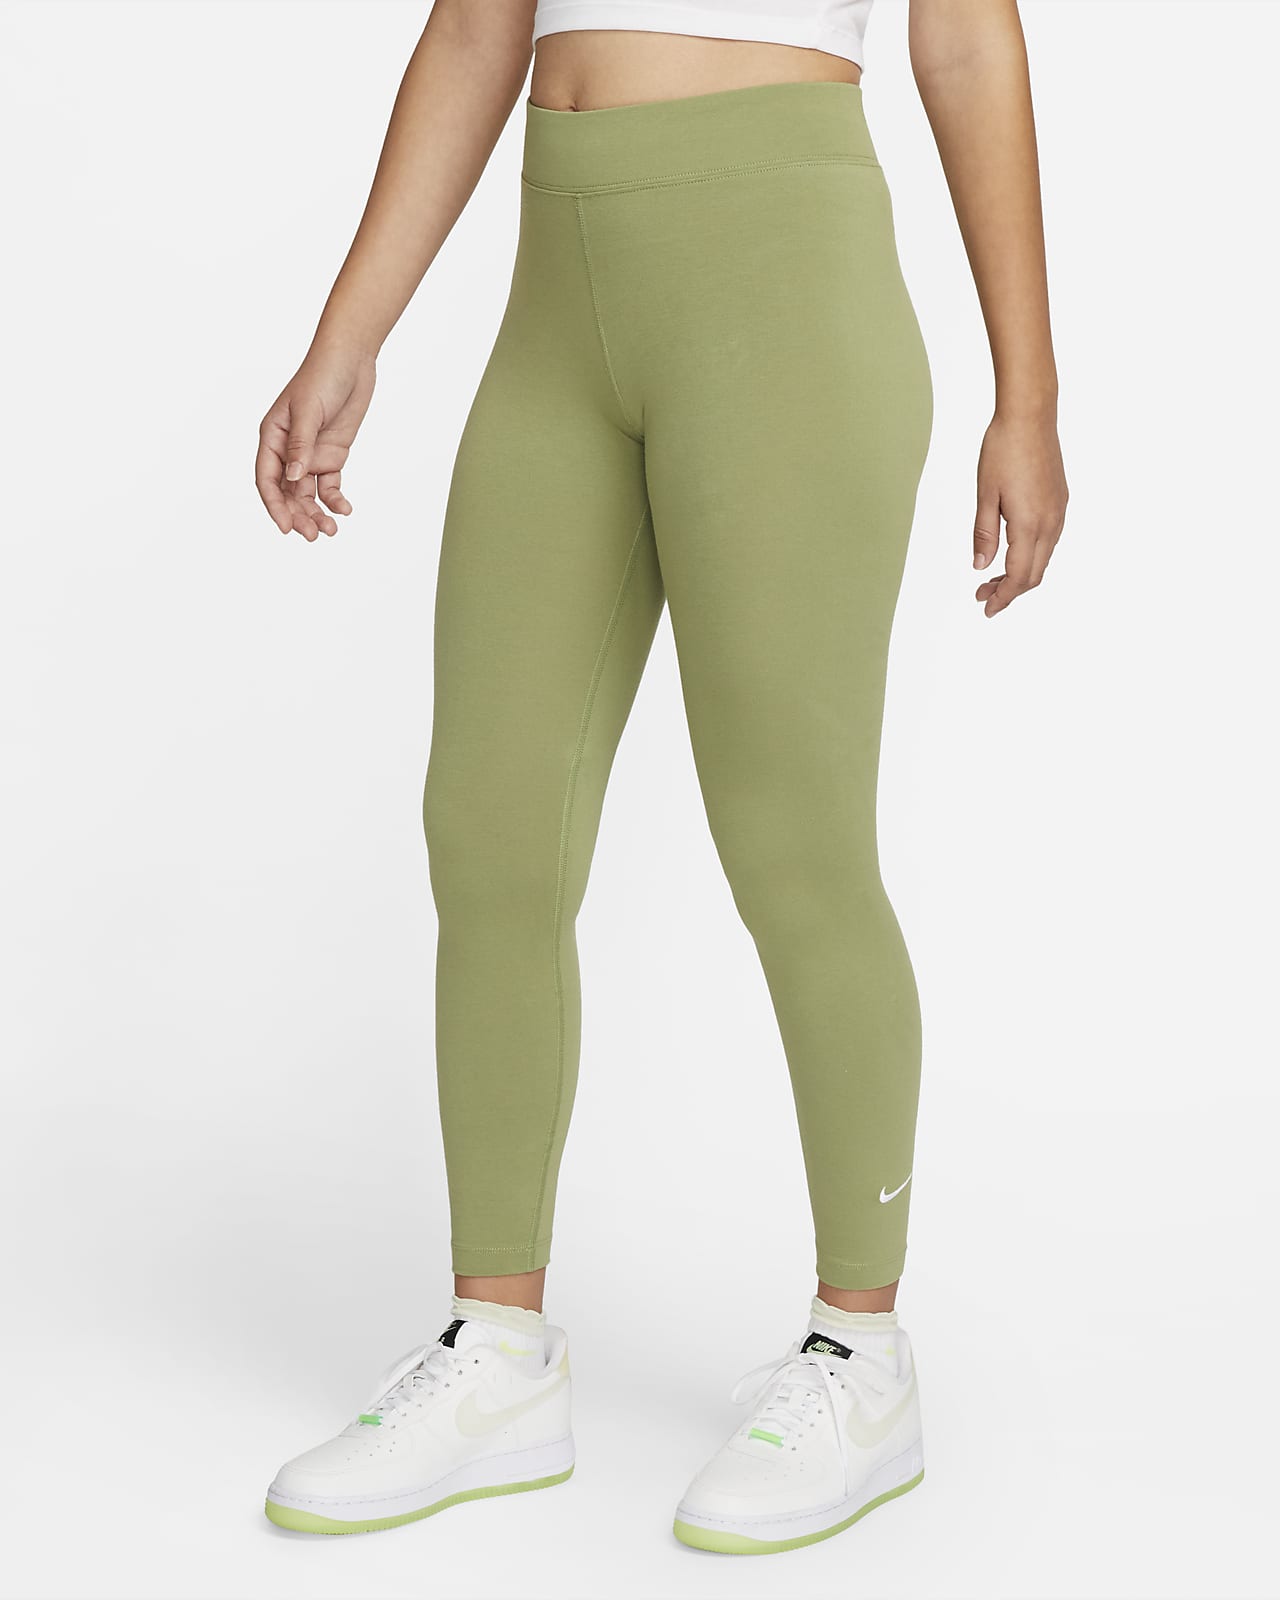 Catastrófico crecer Inmundo Nike Sportswear Essential Leggings de talle medio de 7/8 - Mujer. Nike ES